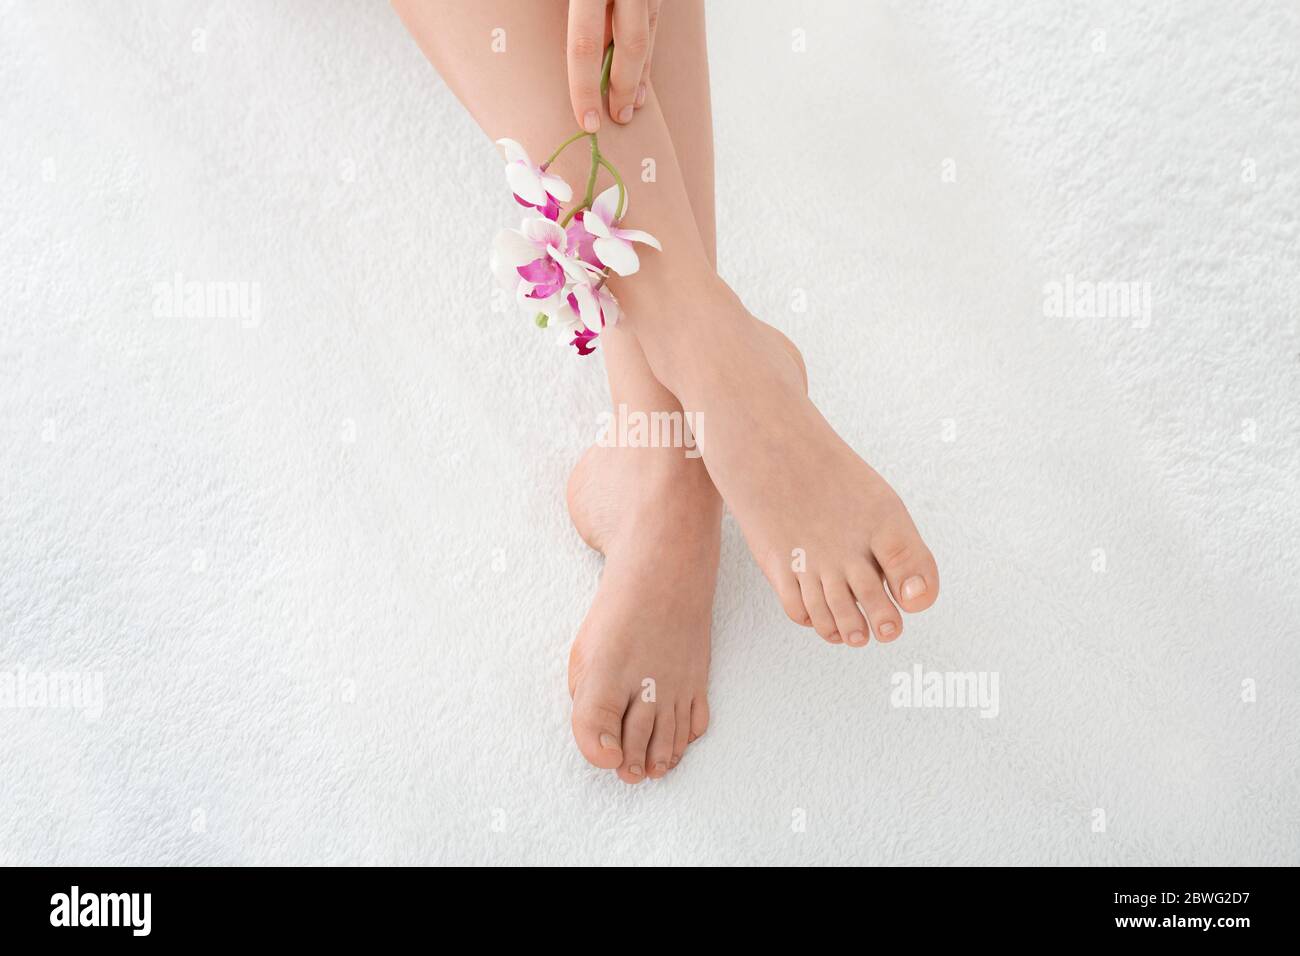 Concept de jambes magnifiques. Jambes et pédicures féminines bien entretenues avec fleur Banque D'Images